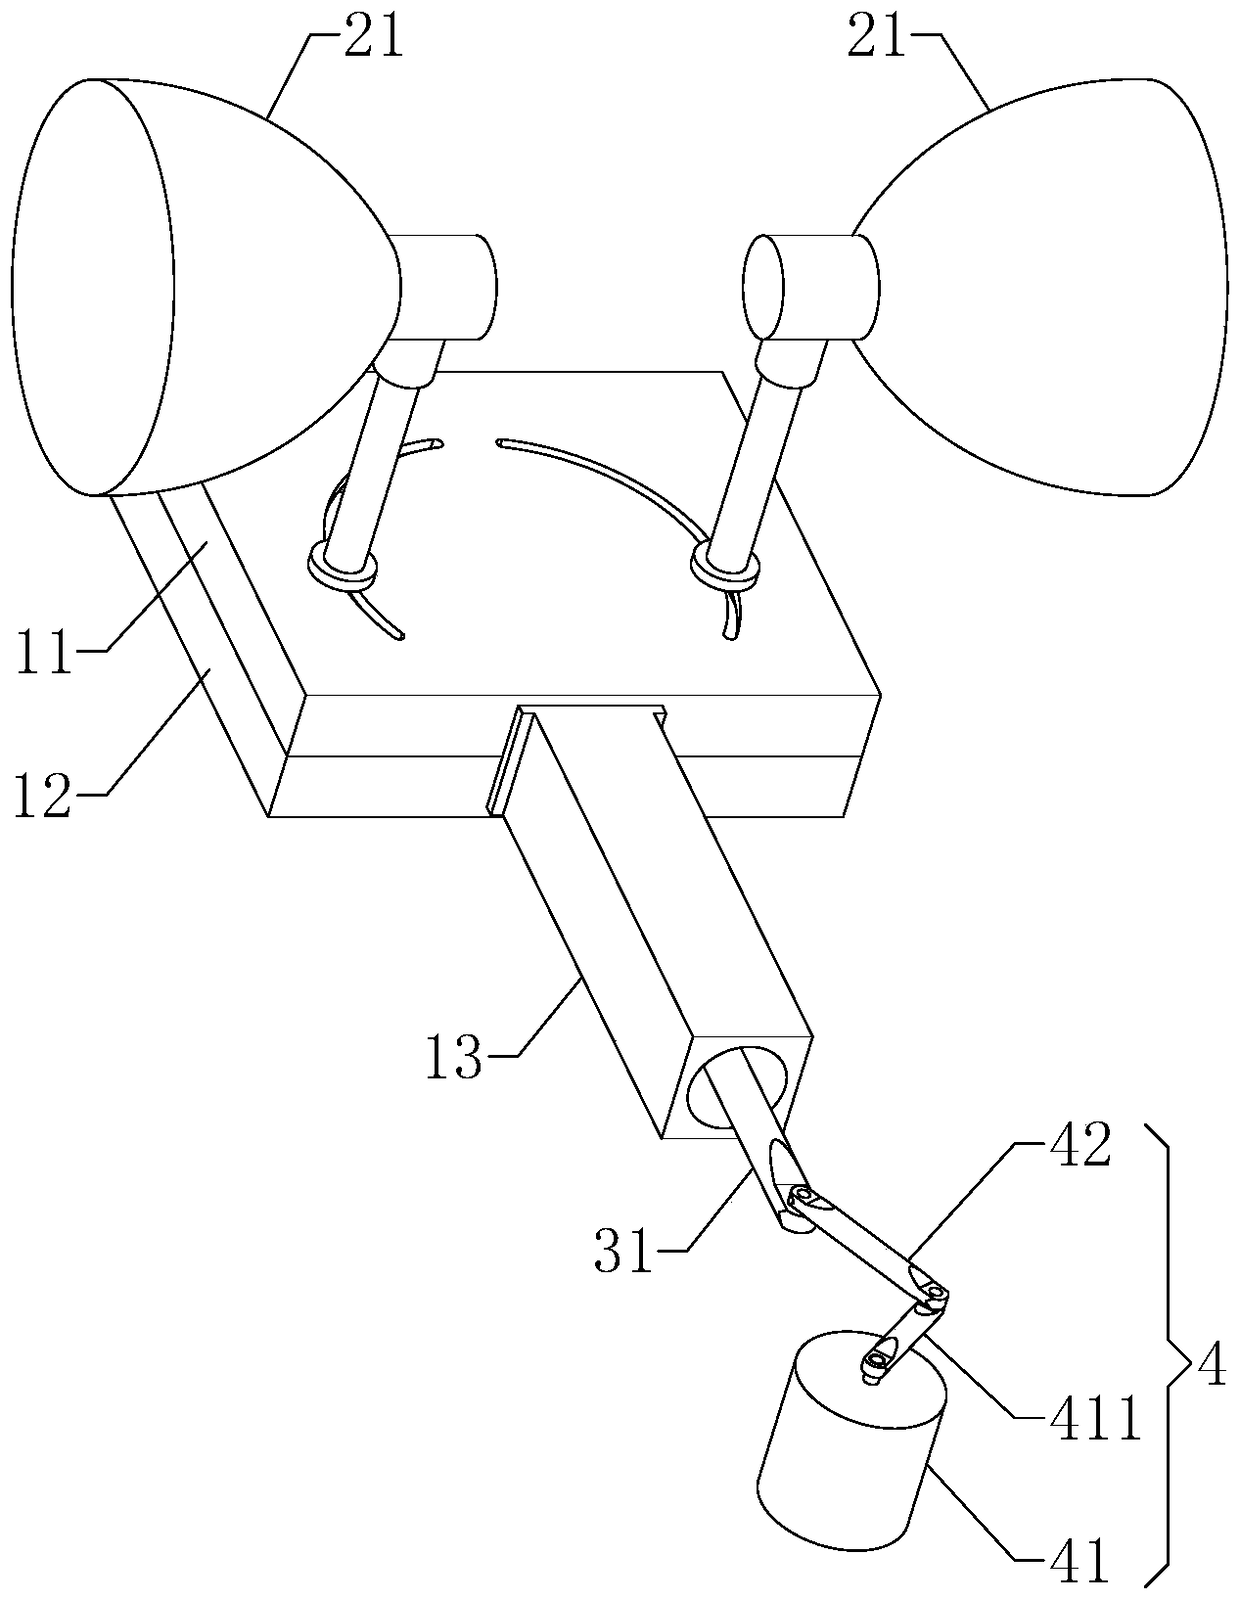 Lamp head swing mechanism